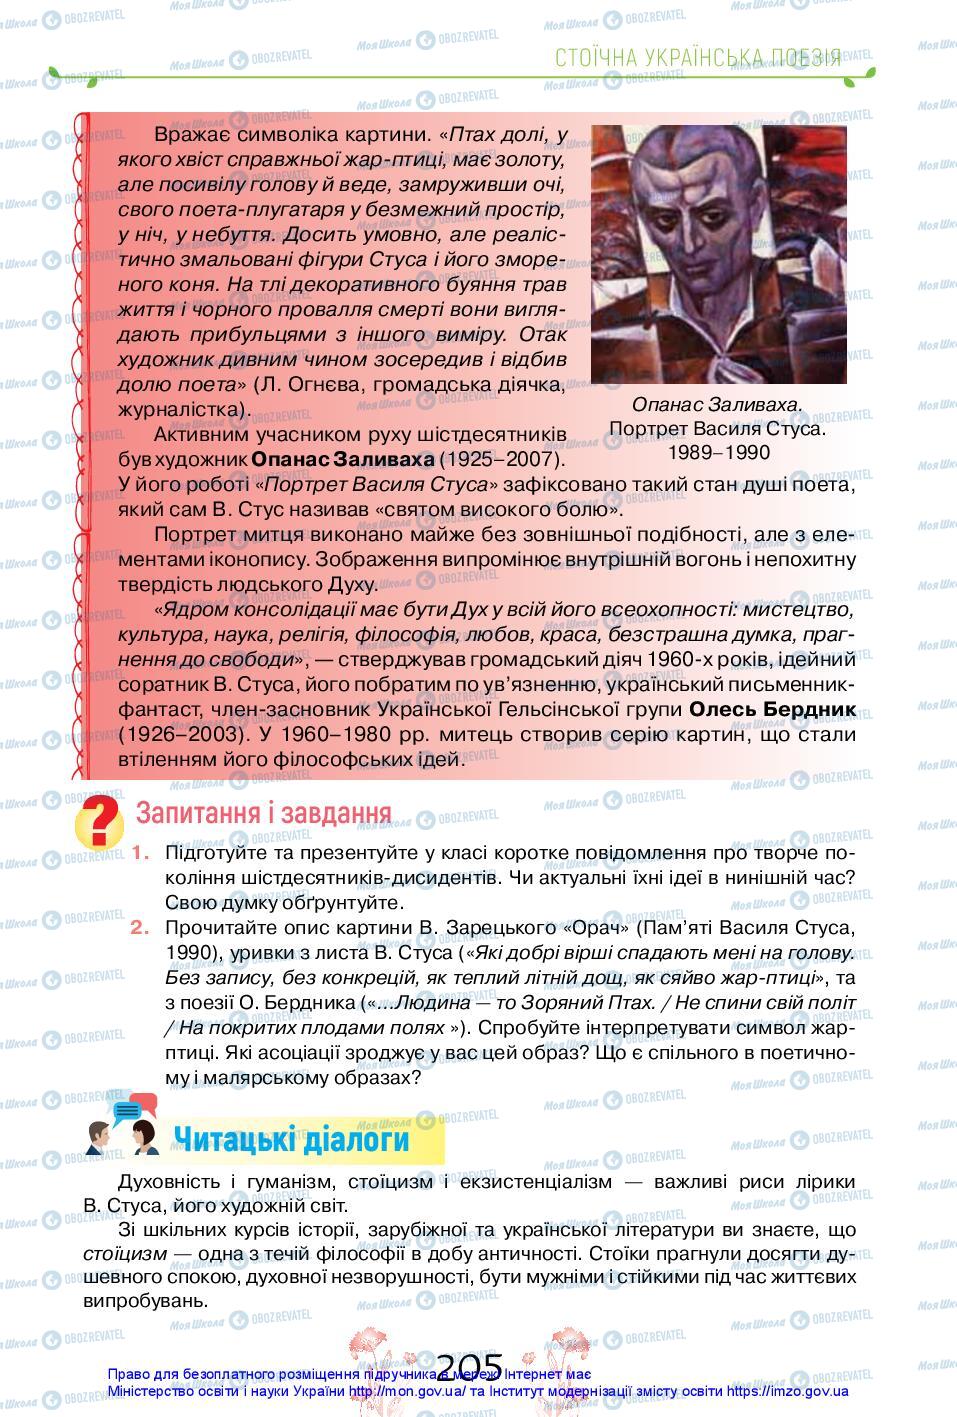 Учебники Укр лит 11 класс страница 205